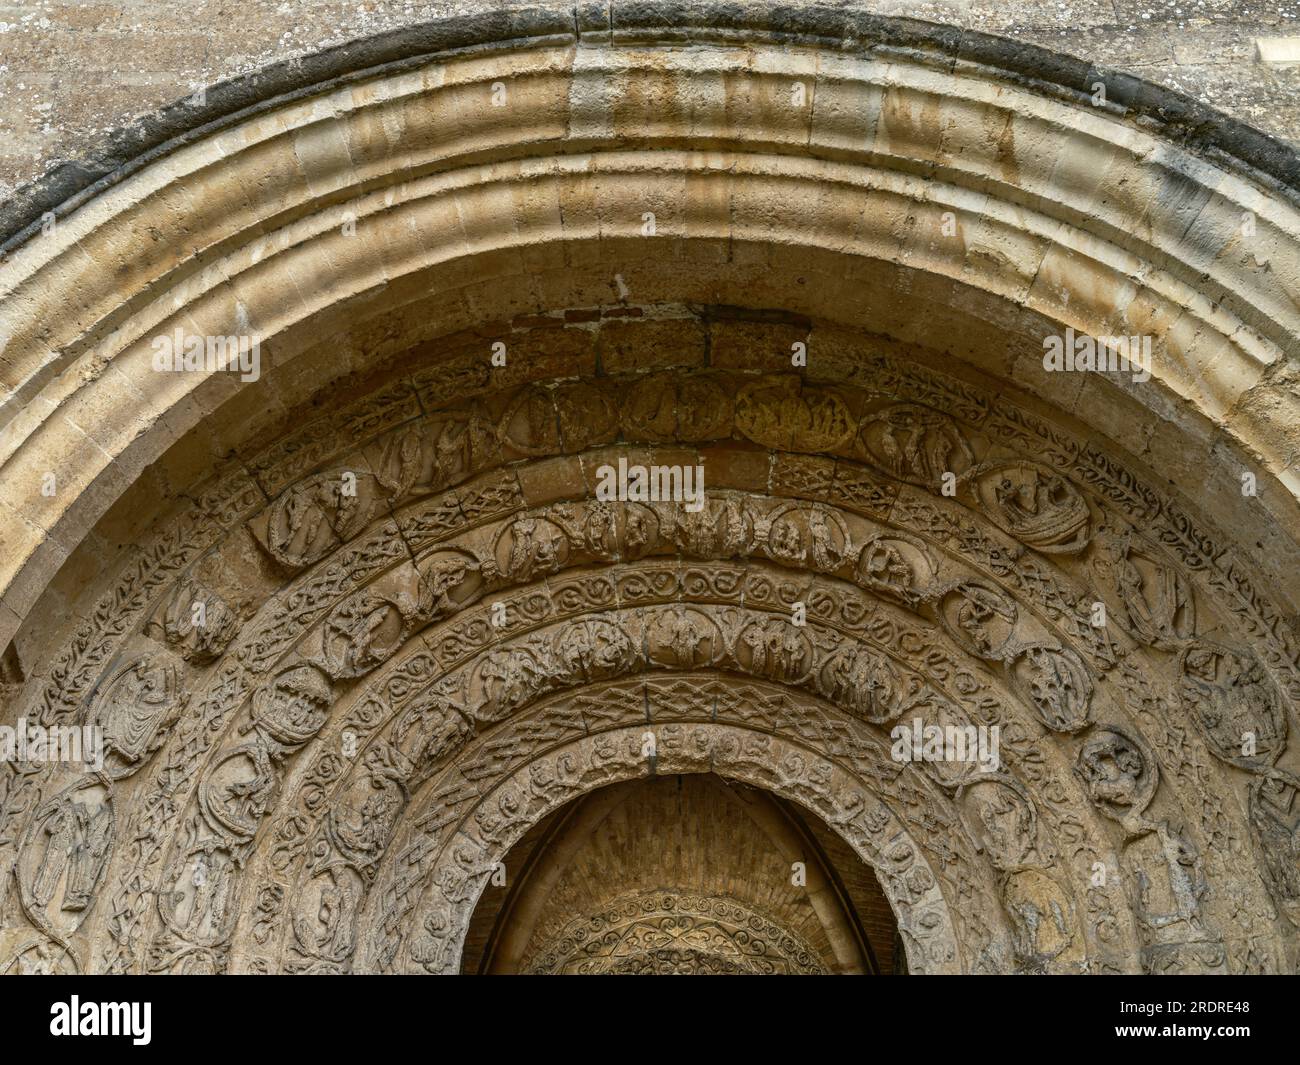 Un'immagine ad alta risoluzione del portico dell'abbazia di Malmesbury che mostra le sculture avverse che adornano l'ingresso dell'antico monastero benedettino. Foto Stock